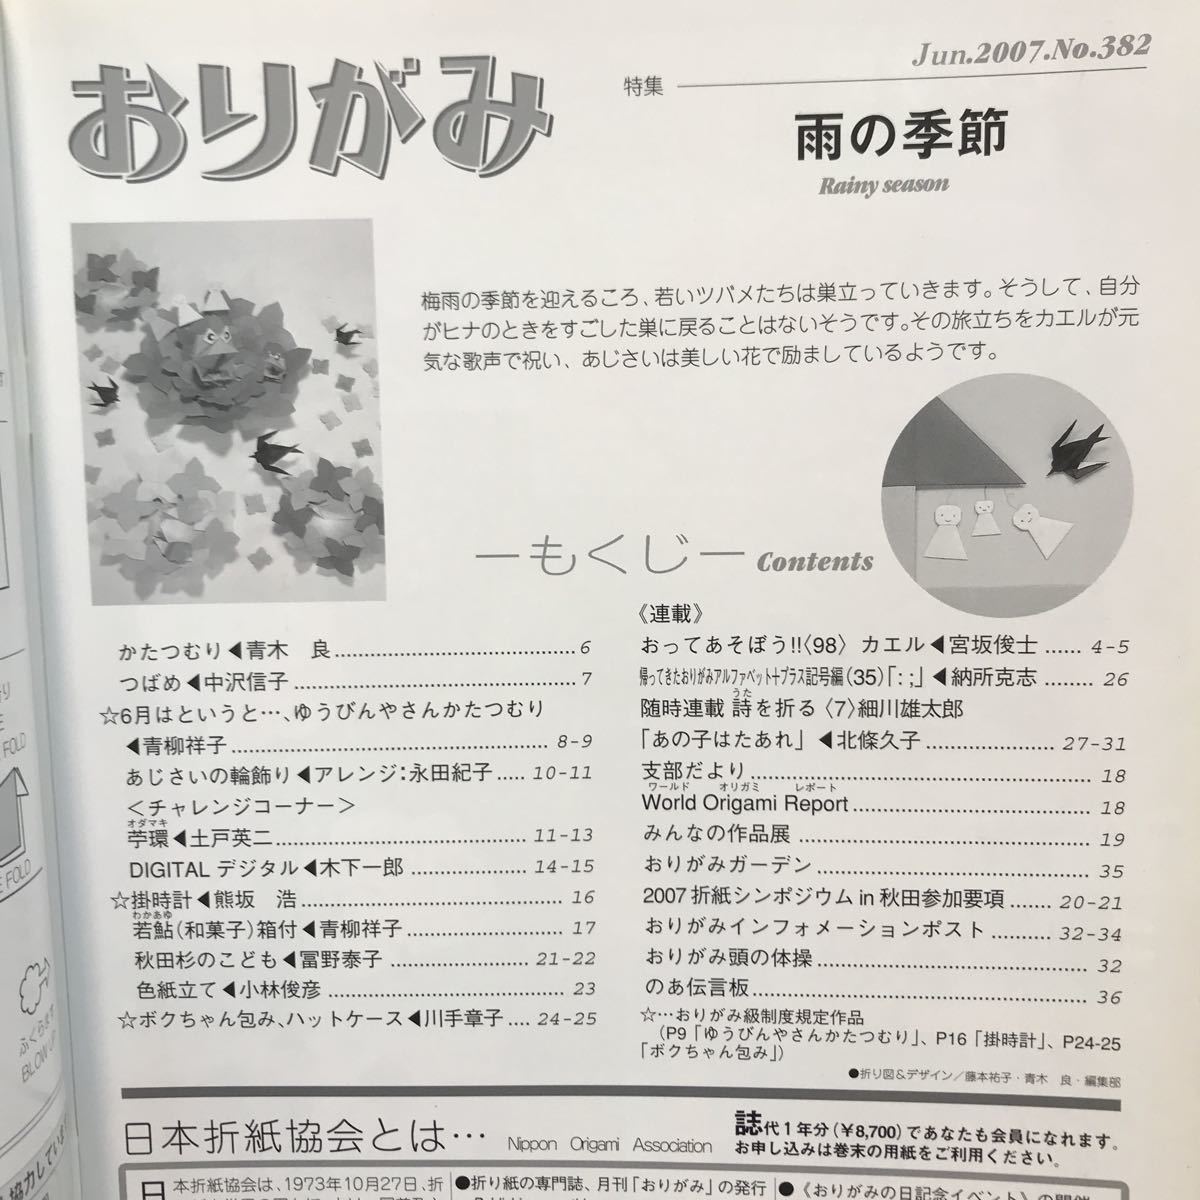 月刊おりがみ 2007年6月号 No.382 雨の季節 日本折紙協会_画像2